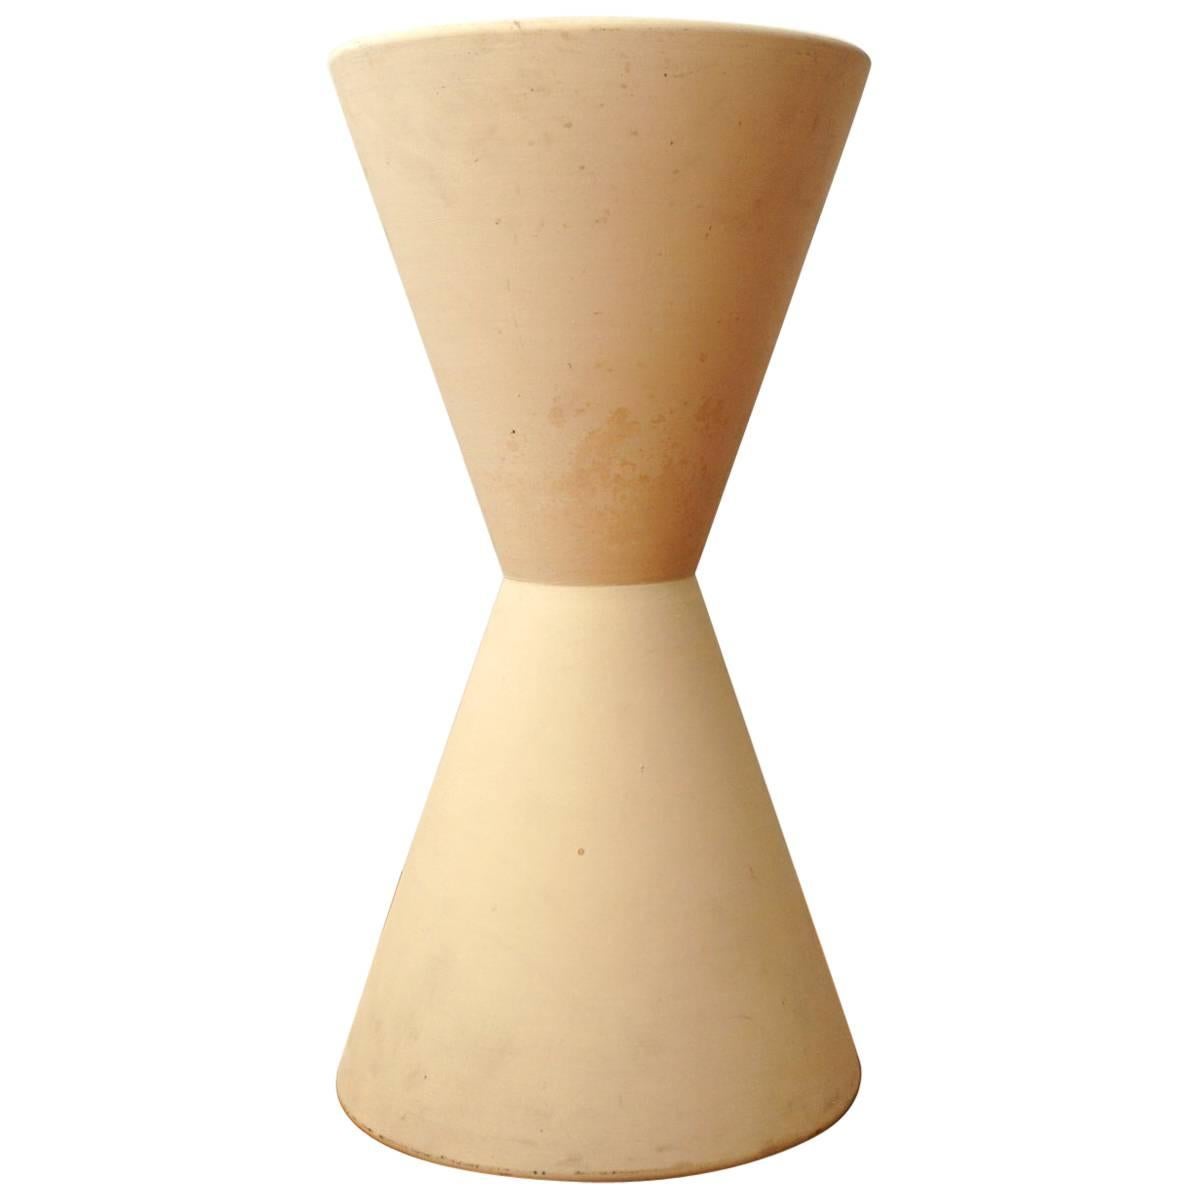 La Gardo Tackett for Architectural Pottery Double Cone in Bisque